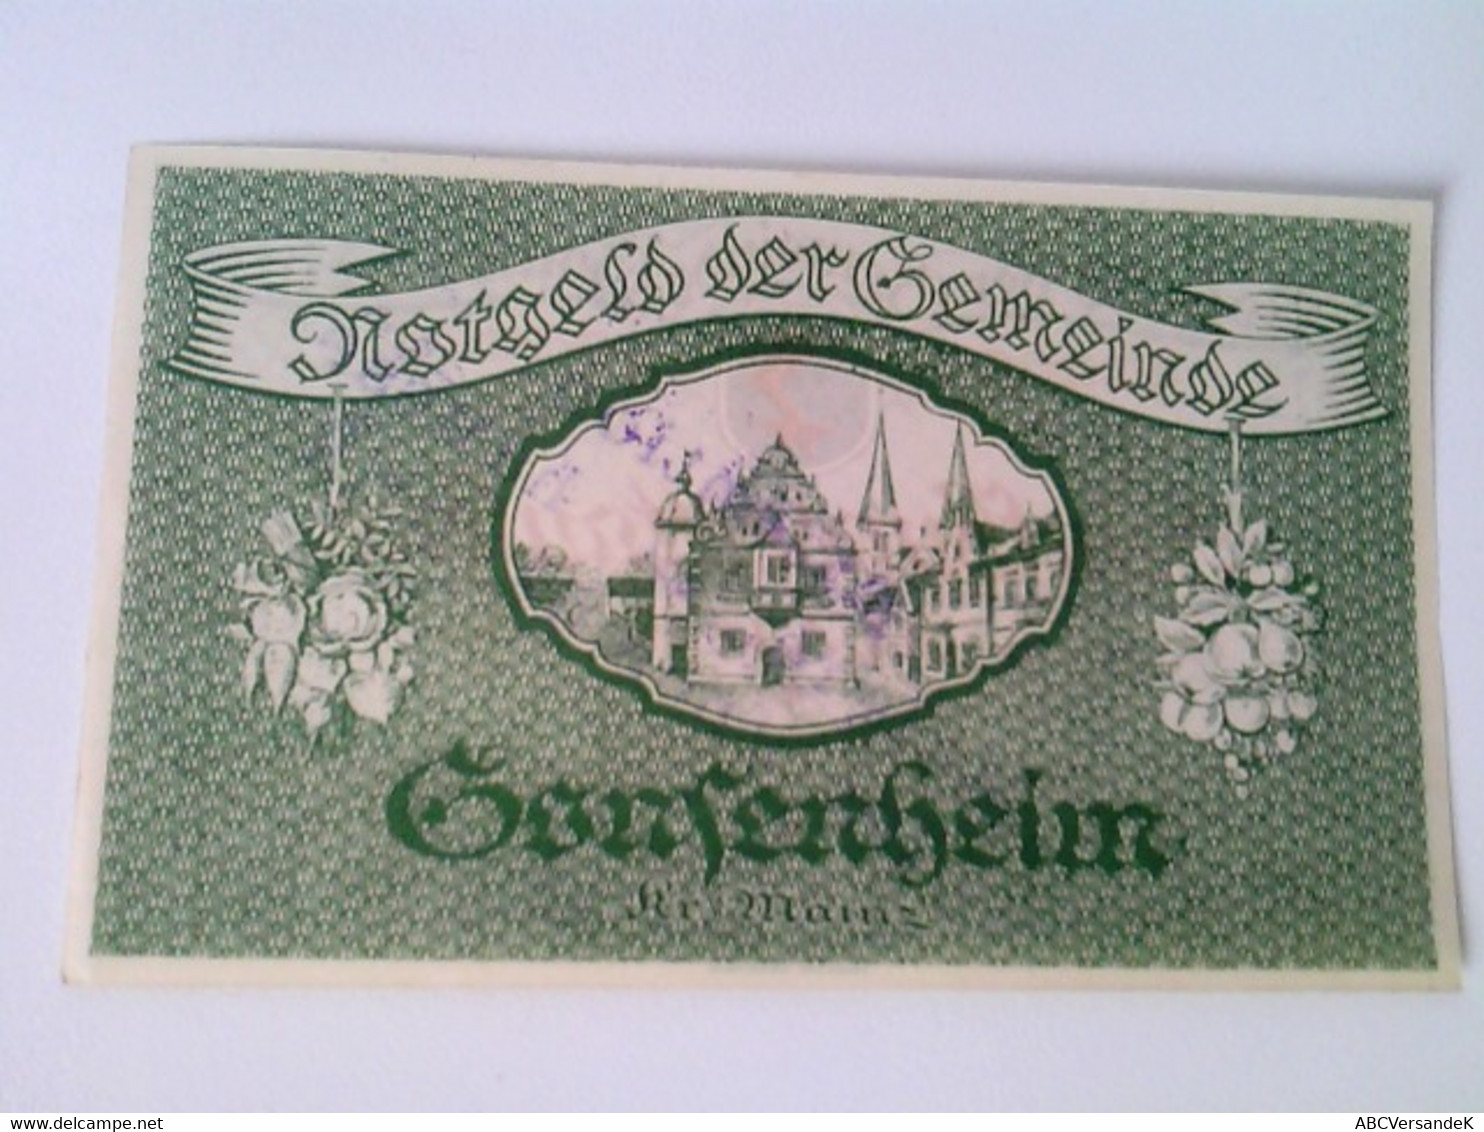 Notgeld Der Gemeinde Gonsenheim: 1 Schein:  500 000 Mark. 17. August 1923 - Numismatik